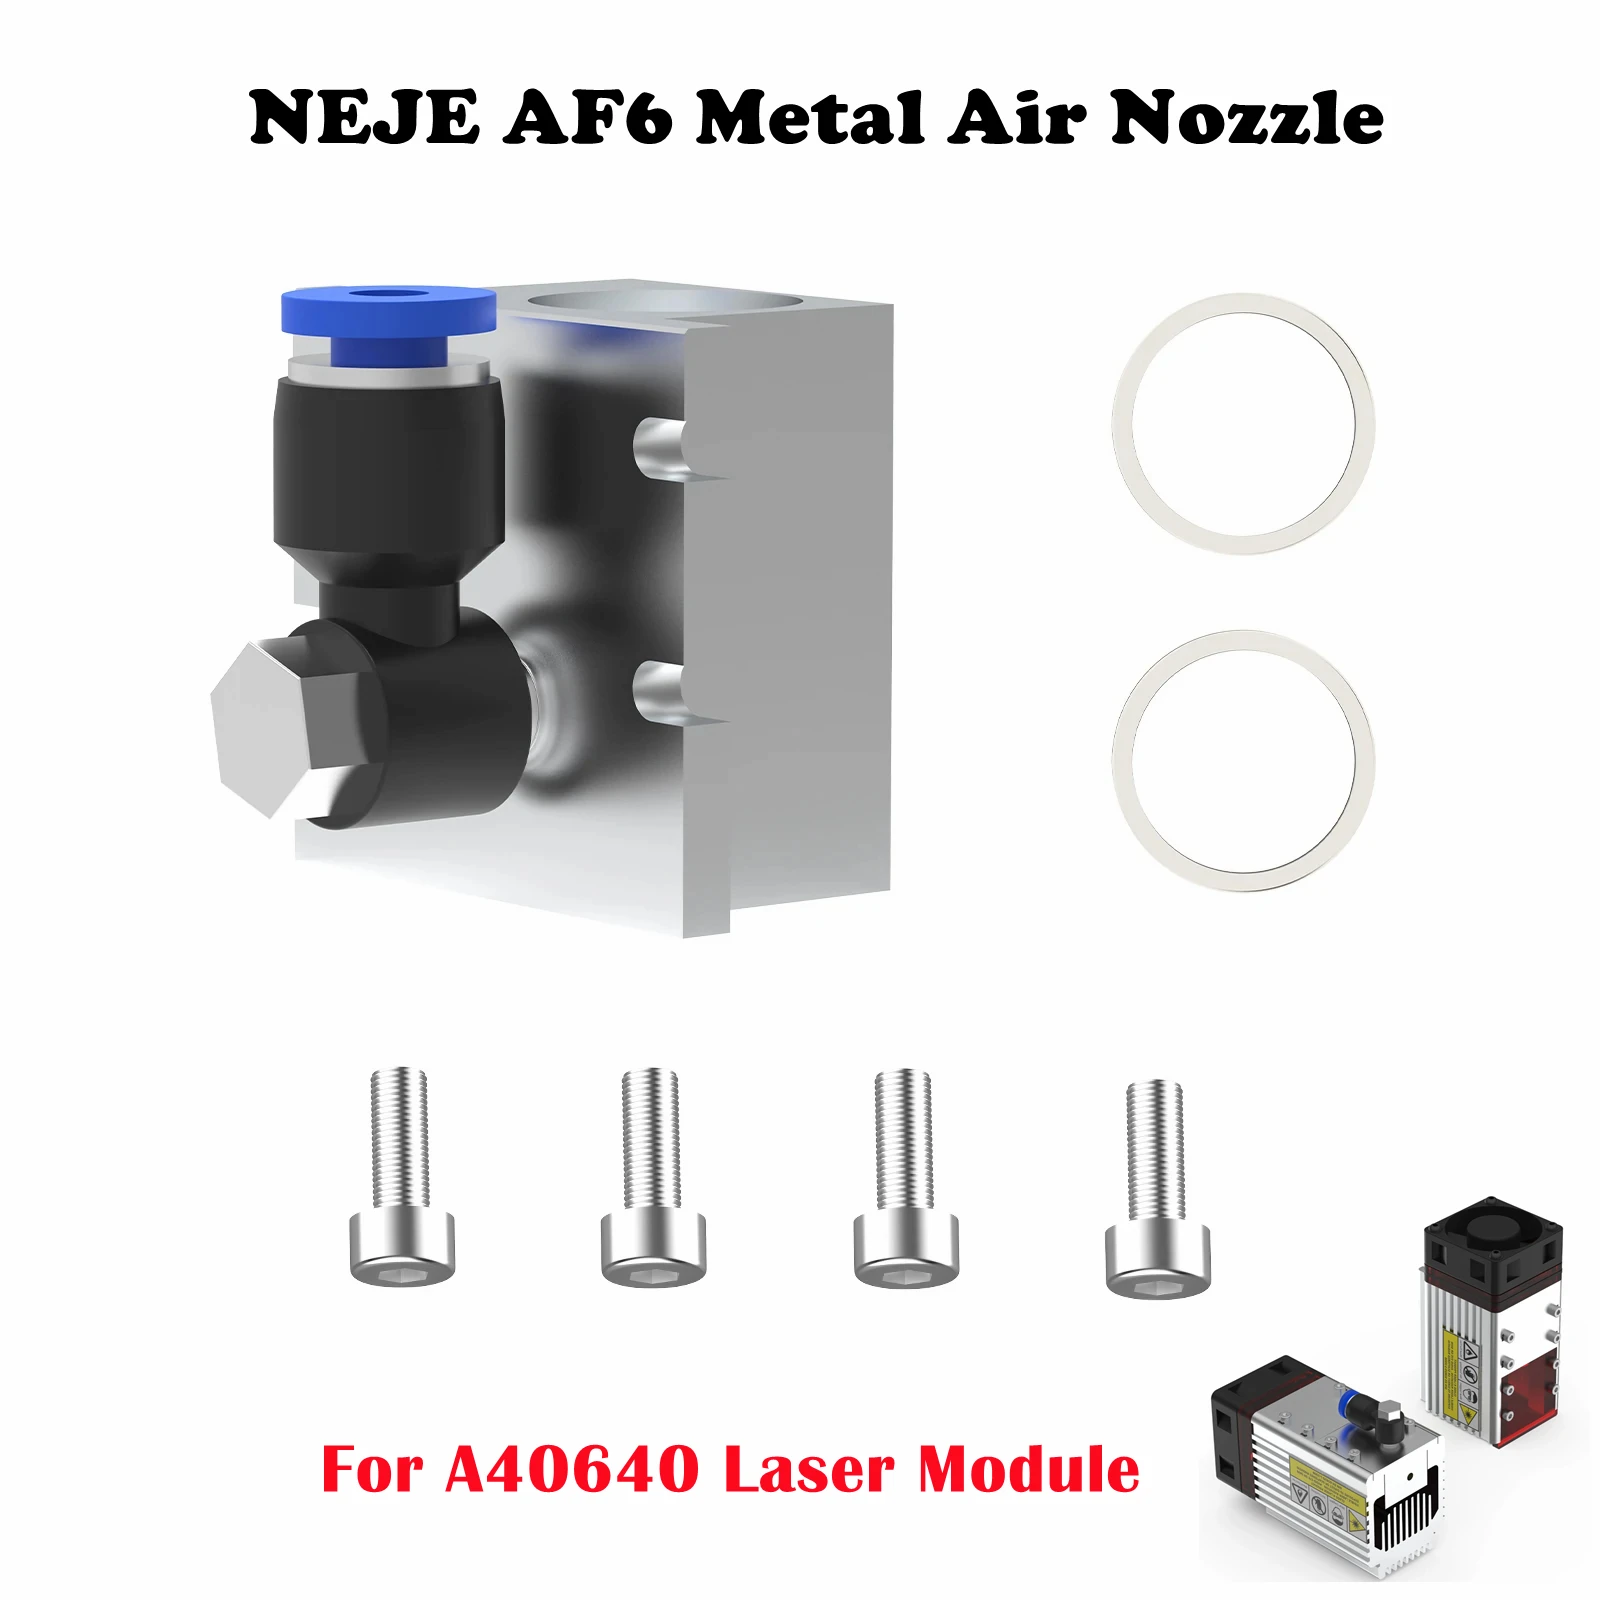 Boquilla de aire de Metal NEJE AF6 CNC, accesorios para módulo láser NEJE A40640, alta presión máxima de 1,5 MPa